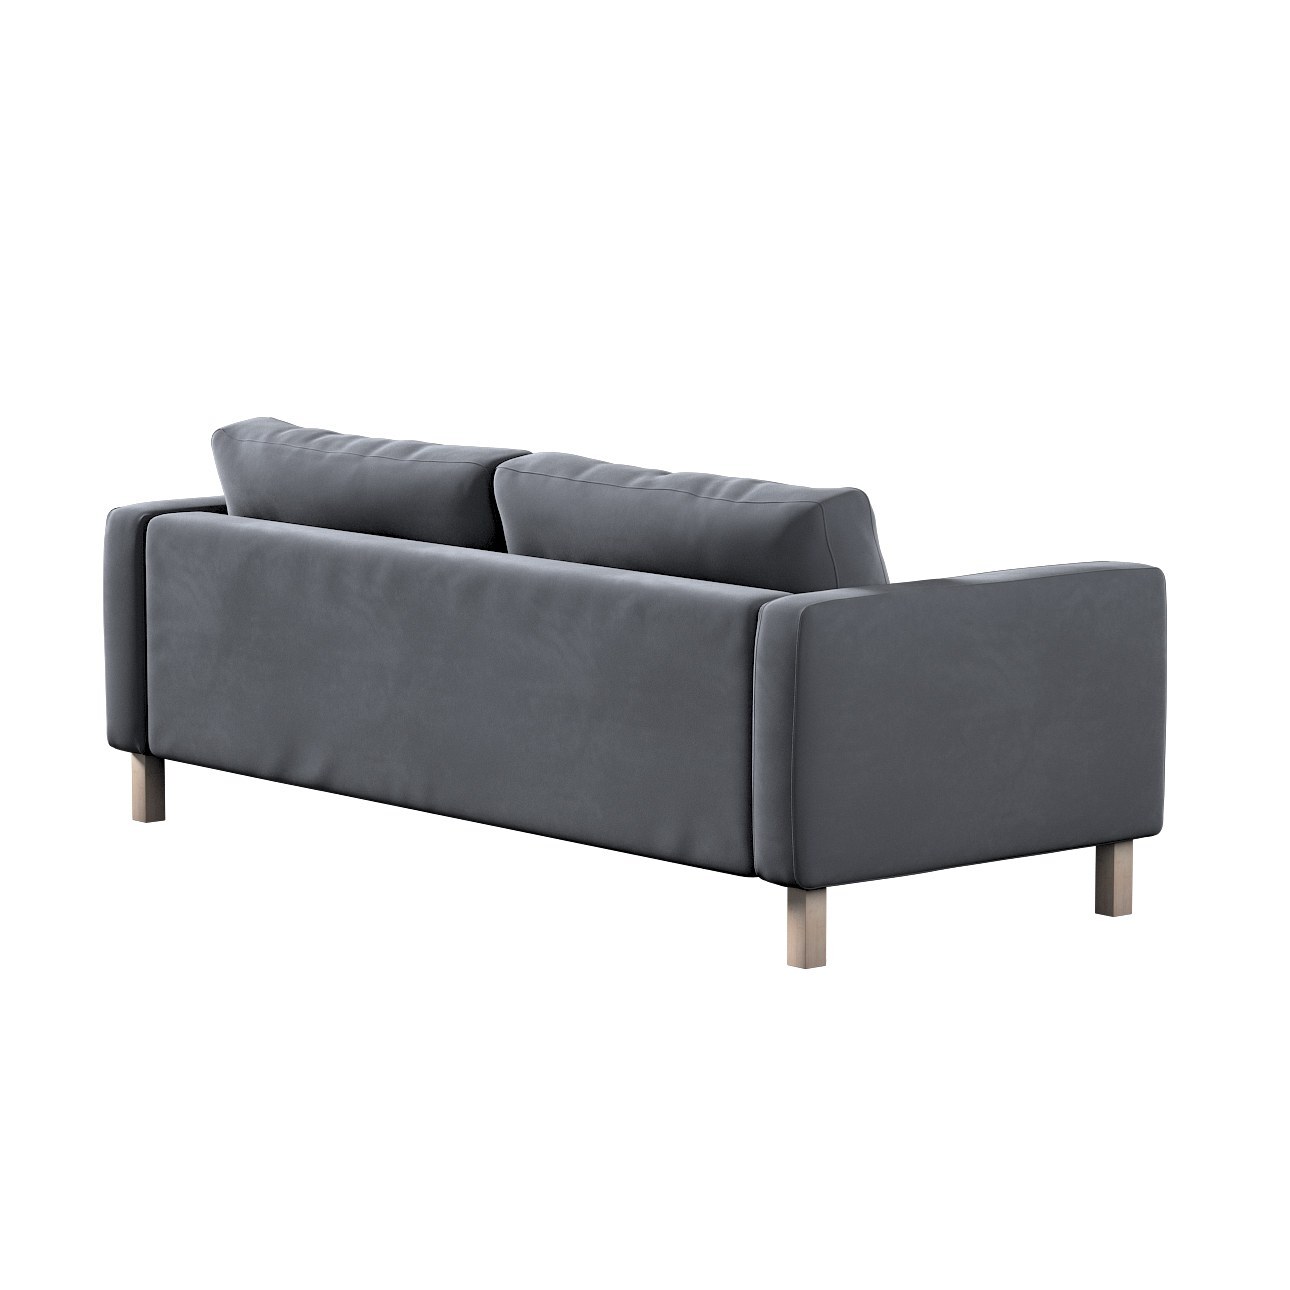 Bezug für Karlstad 3-Sitzer Sofa nicht ausklappbar, kurz, anthrazit, Bezug günstig online kaufen